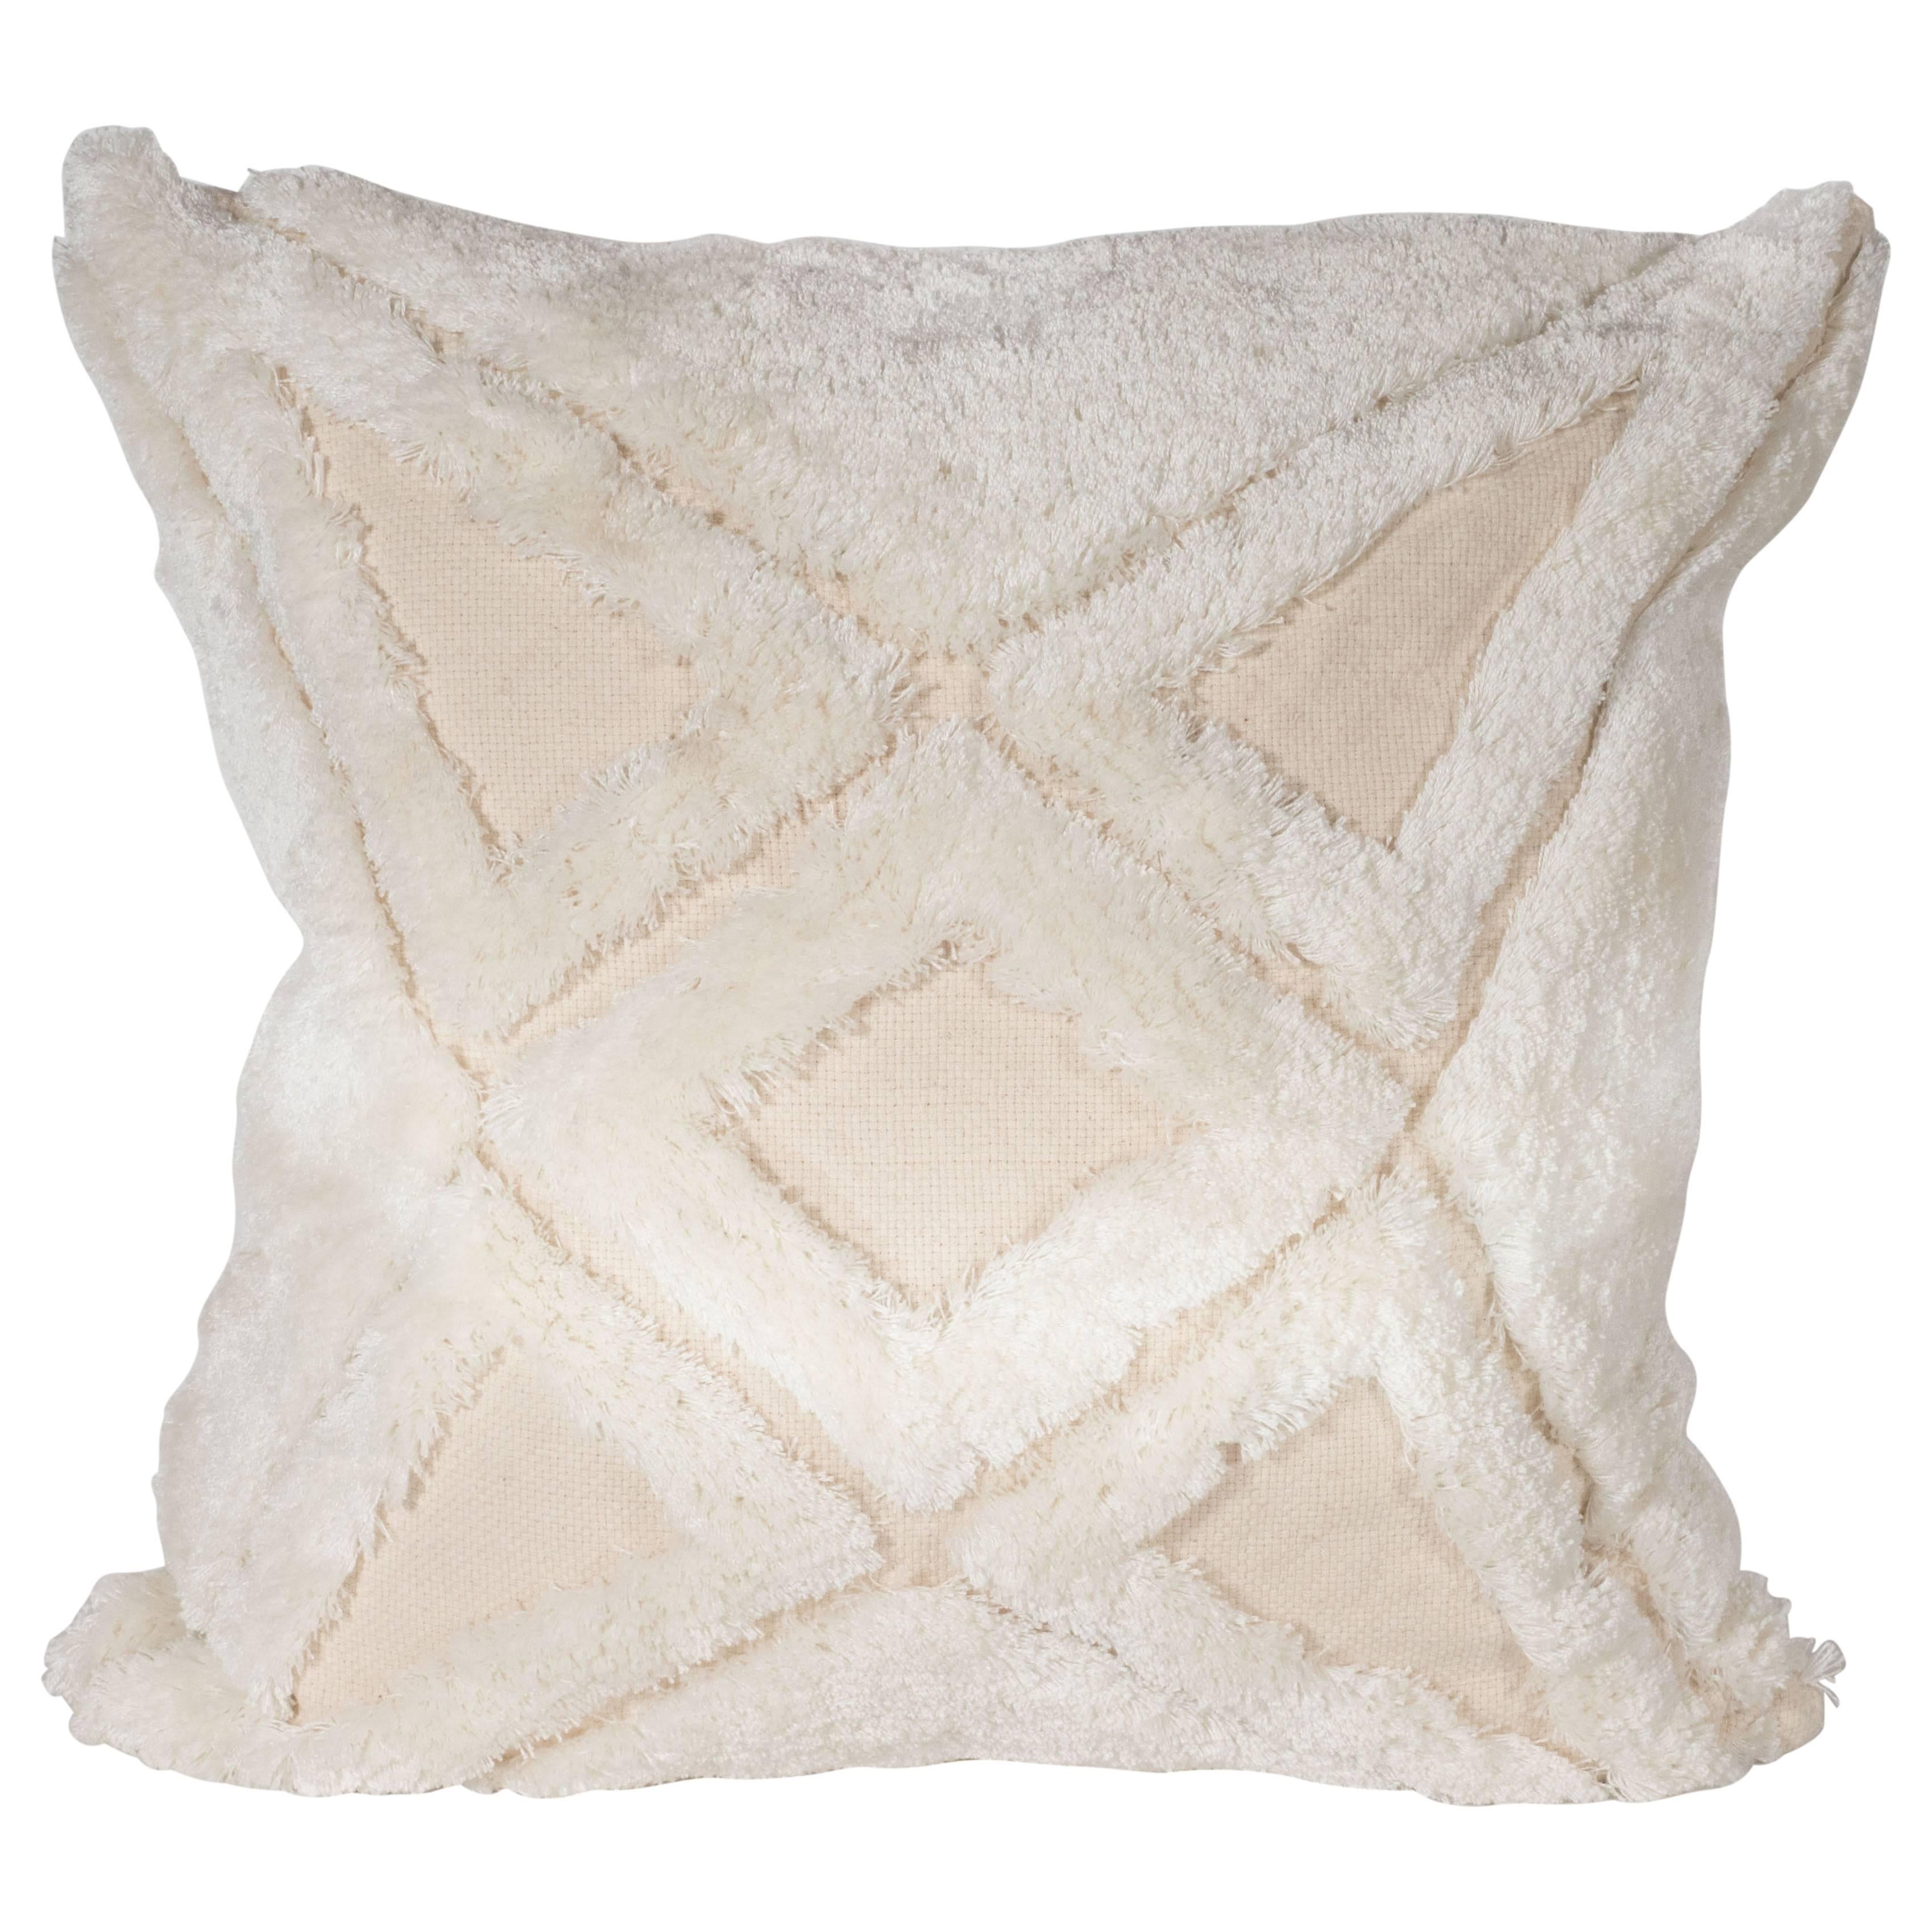 Modernistisches Kissen aus strukturierter Baumwolle in Creme mit weißen geometrischen Mustern durch und durch